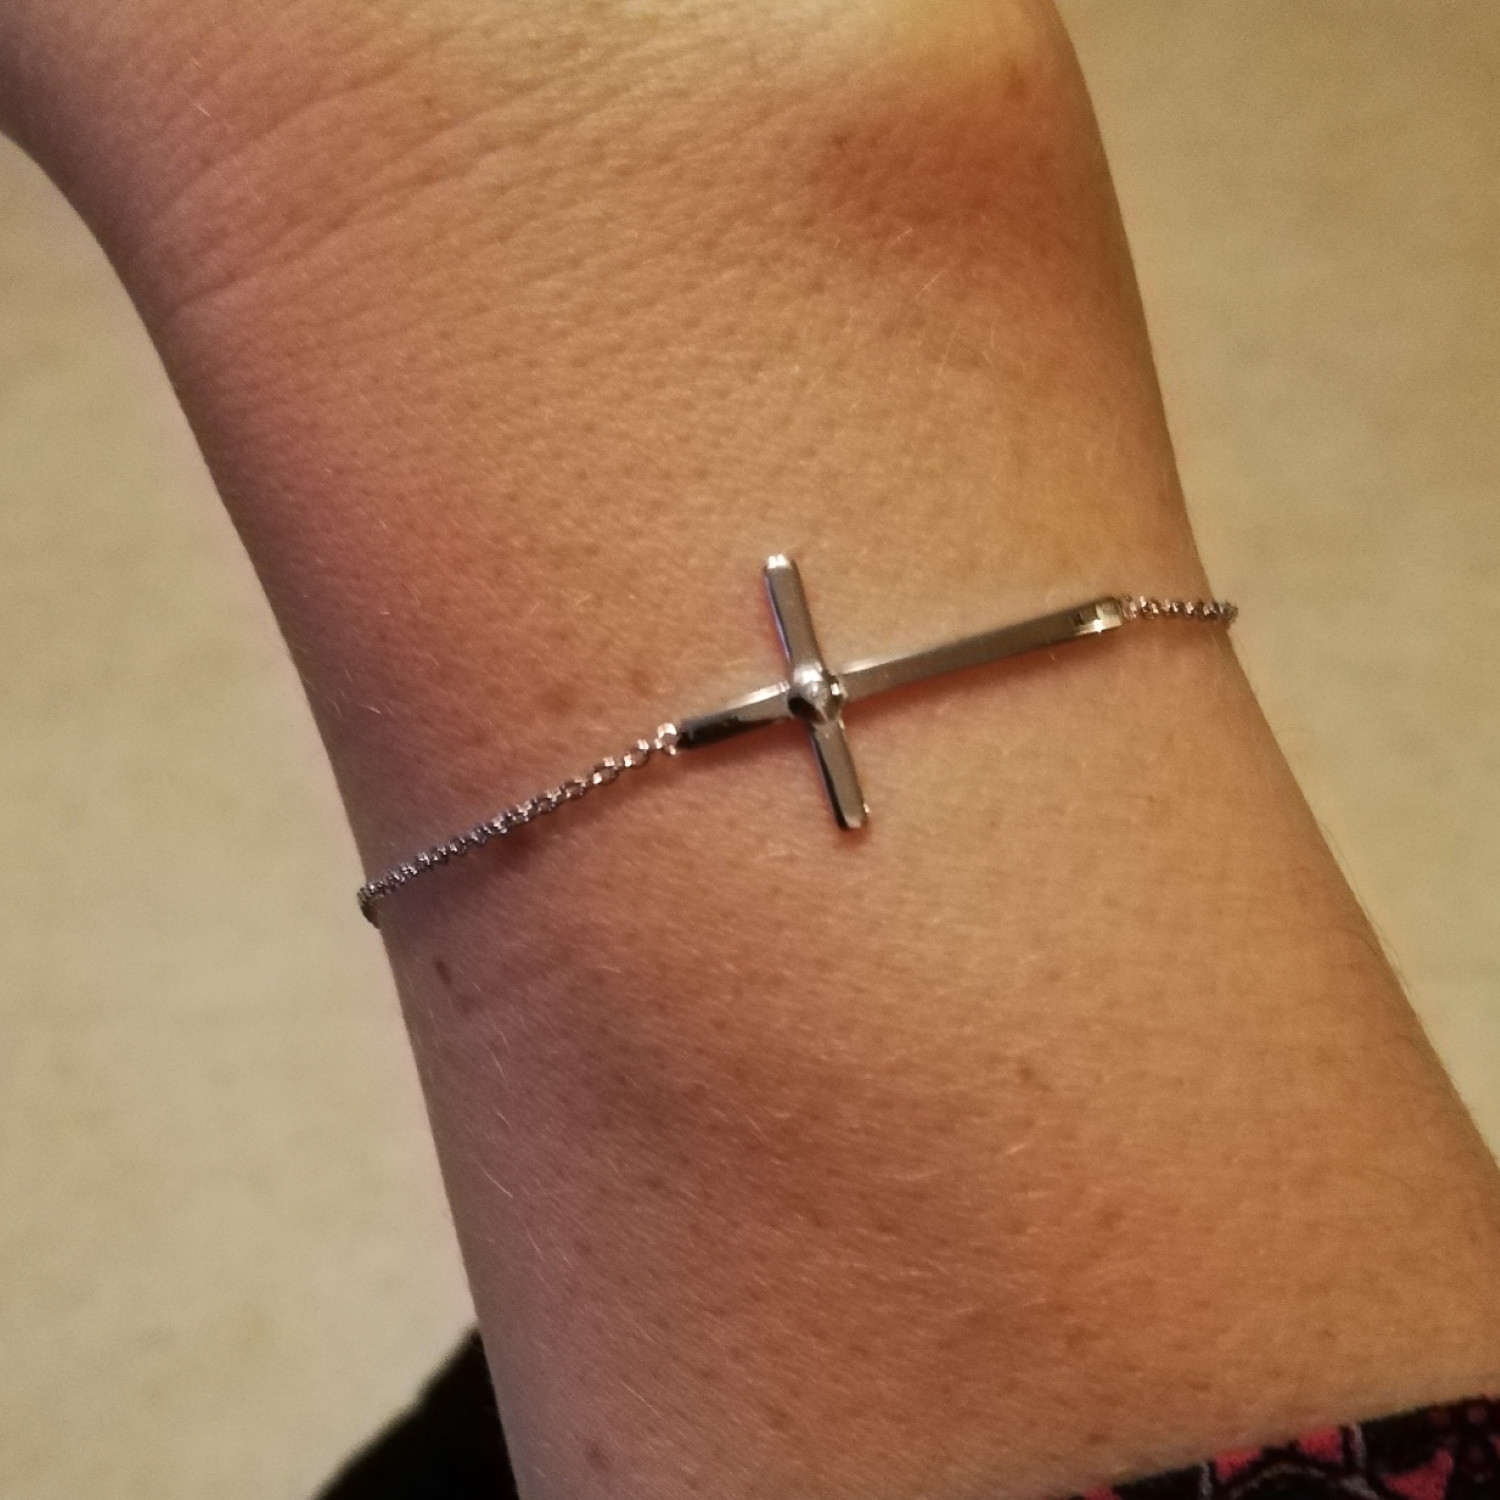 Bracelet croix en argent 925/000 rhodié réhaussé d'un oxyde de zirconium rond serti. Croix  Adolescent Adulte Femme Fille Indémodable Religion 